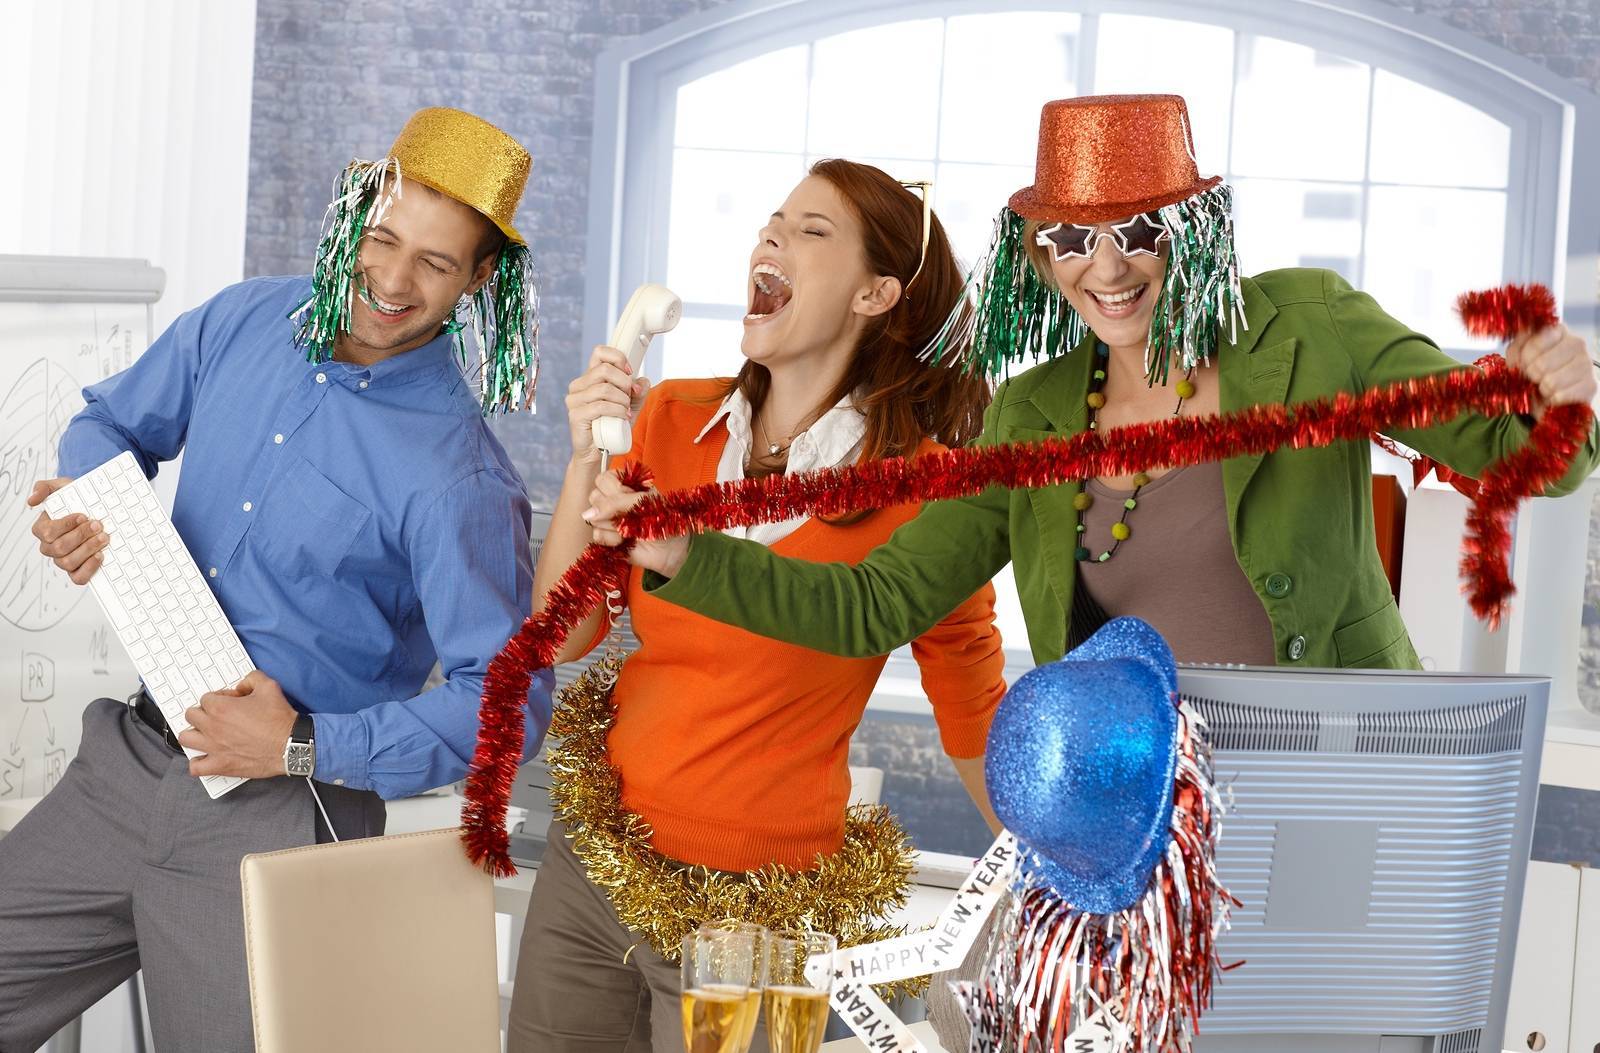 Развлечения на Новый год, или Несколько конкурсов, способных развеселить гостей